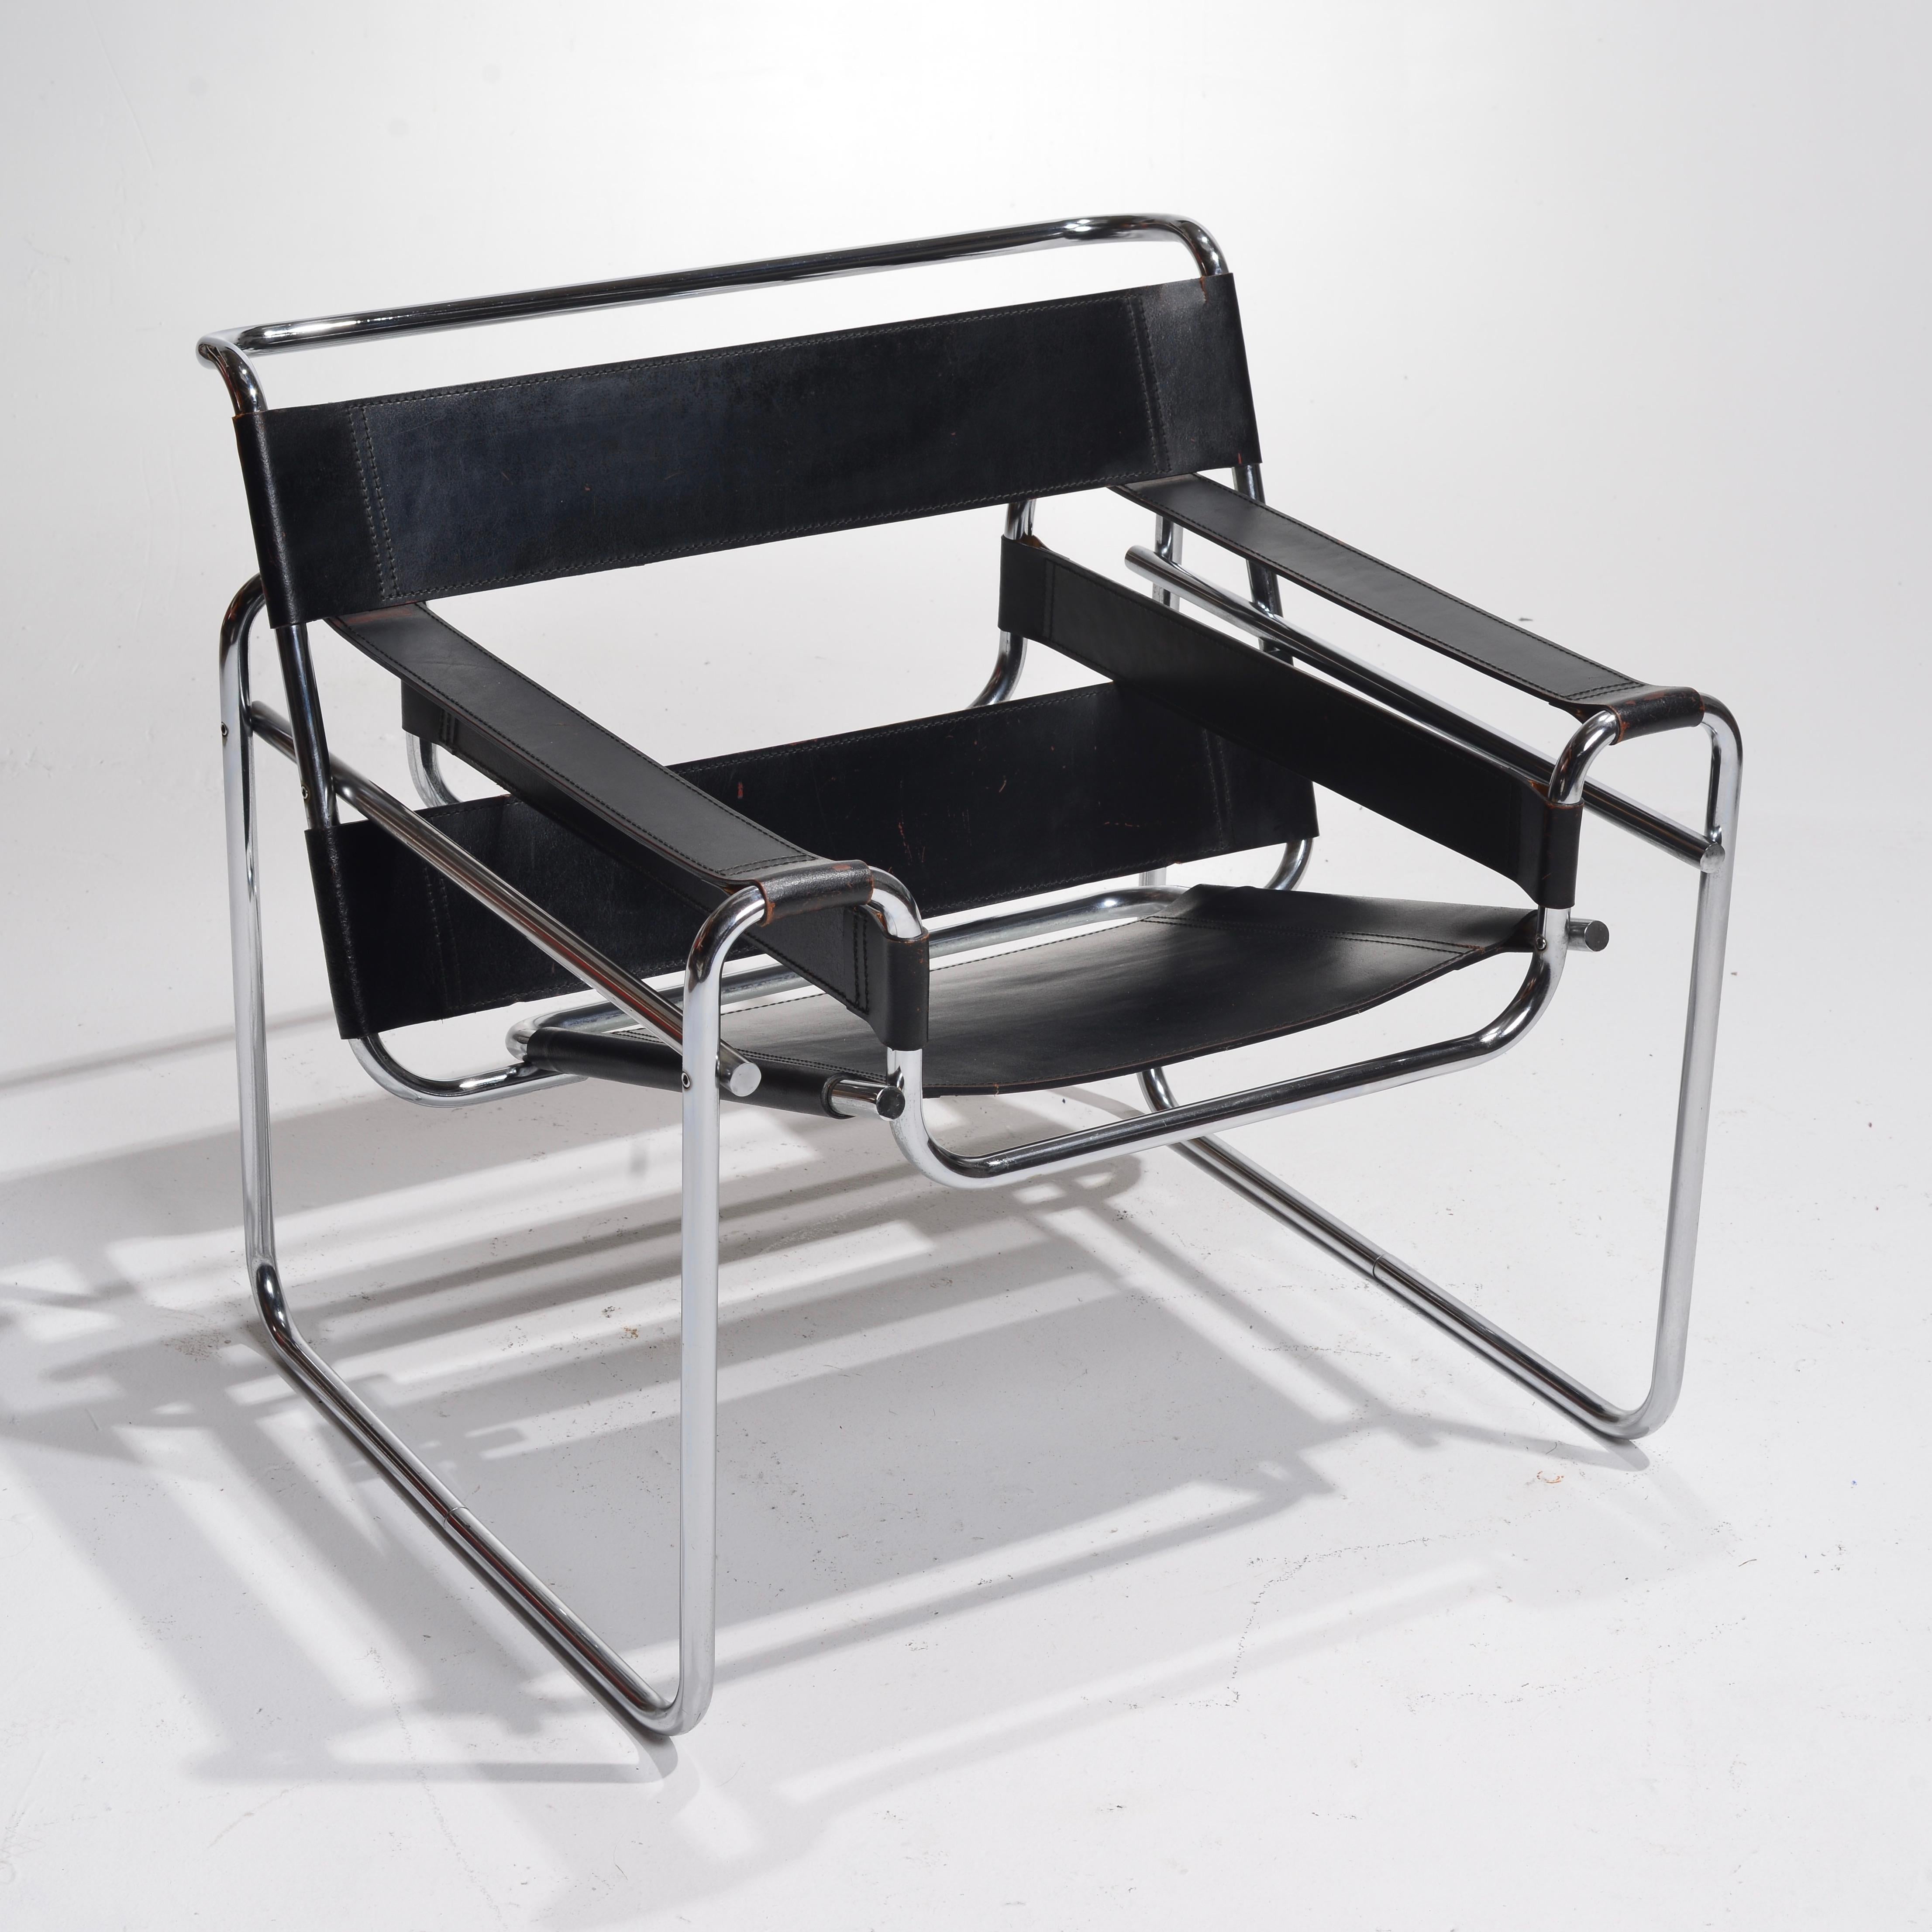 ntroduction du fauteuil Knoll Wassily B3 par Marcel Breuer pour Gavina - Un classique moderne de 1960

Le fauteuil Wassily B3 de Knoll, conçu par le visionnaire Marcel Breuer pour Gavina en 1960, est un meuble emblématique qui illustre les